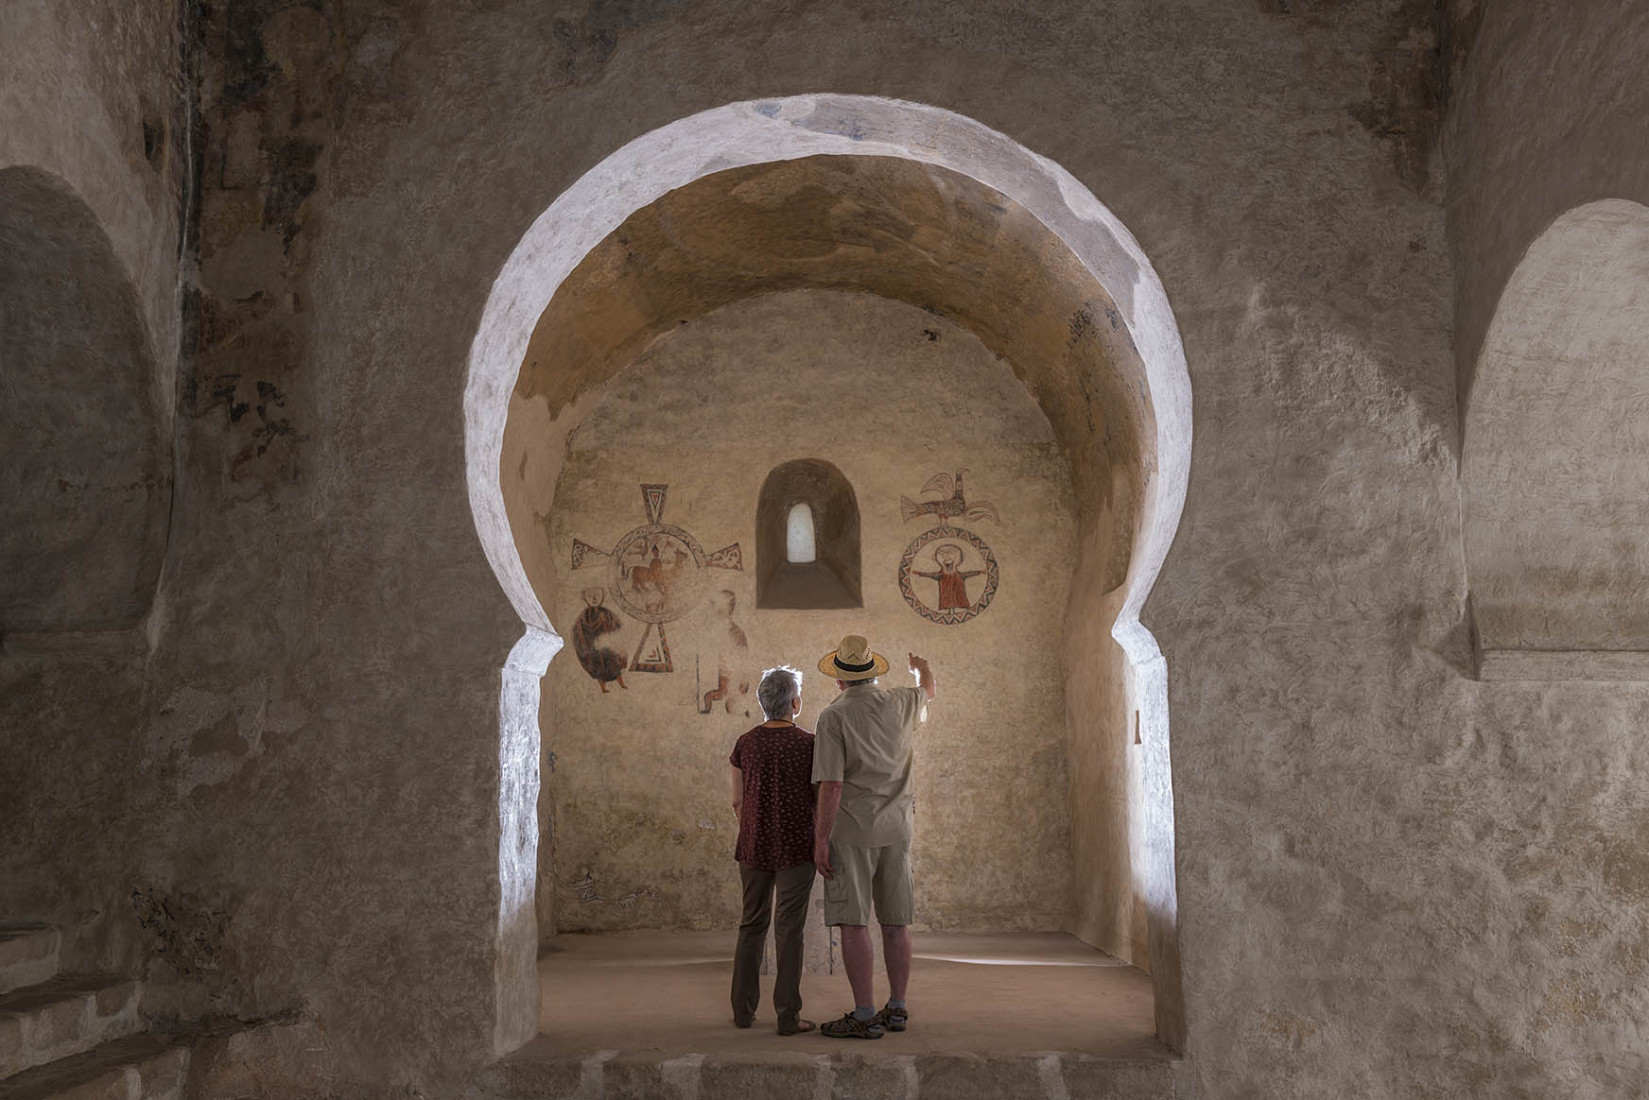 Una parella visitant una església romànica / Una pareja visitando una iglésia románica